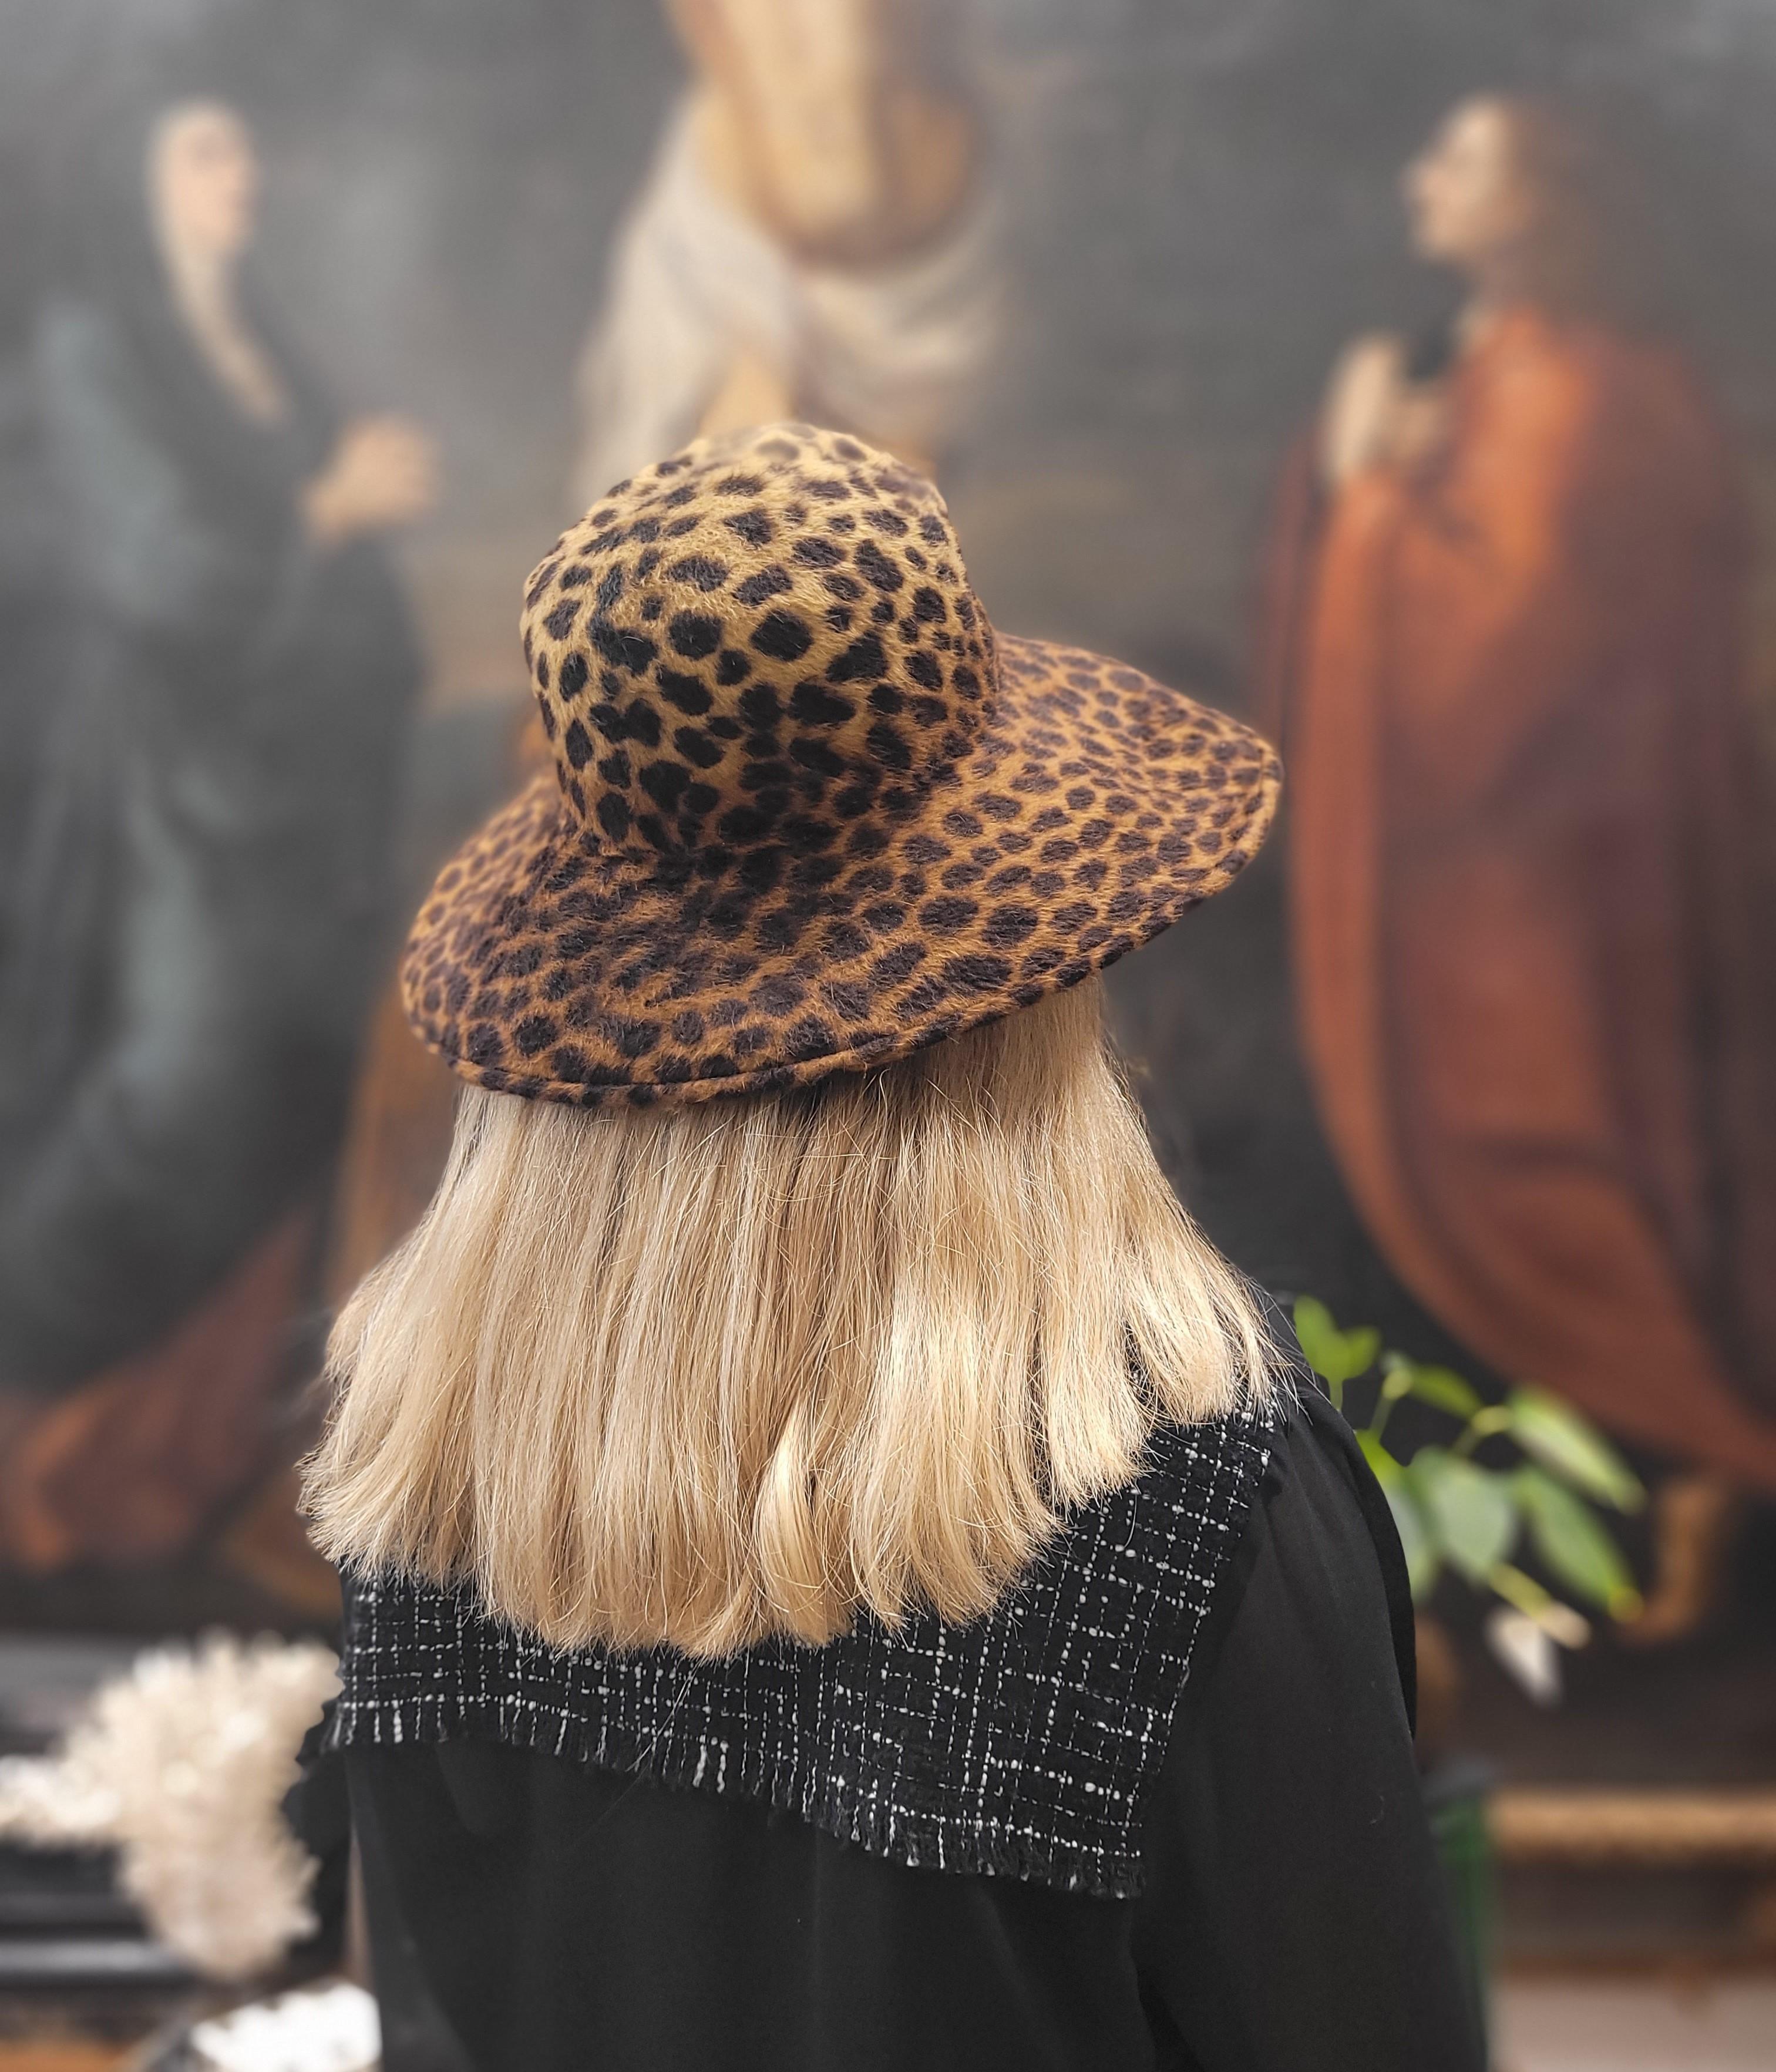 Exquisiter und immer aktueller Pamela-Hut mit Leopardenmotiv von Laura Ashley aus den 90er Jahren.
In perfektem Zustand, kaum benutzt.
Es wurde von seinem Vorbesitzer in London gekauft.
Von außergewöhnlicher Qualität wie alle Produkte dieser